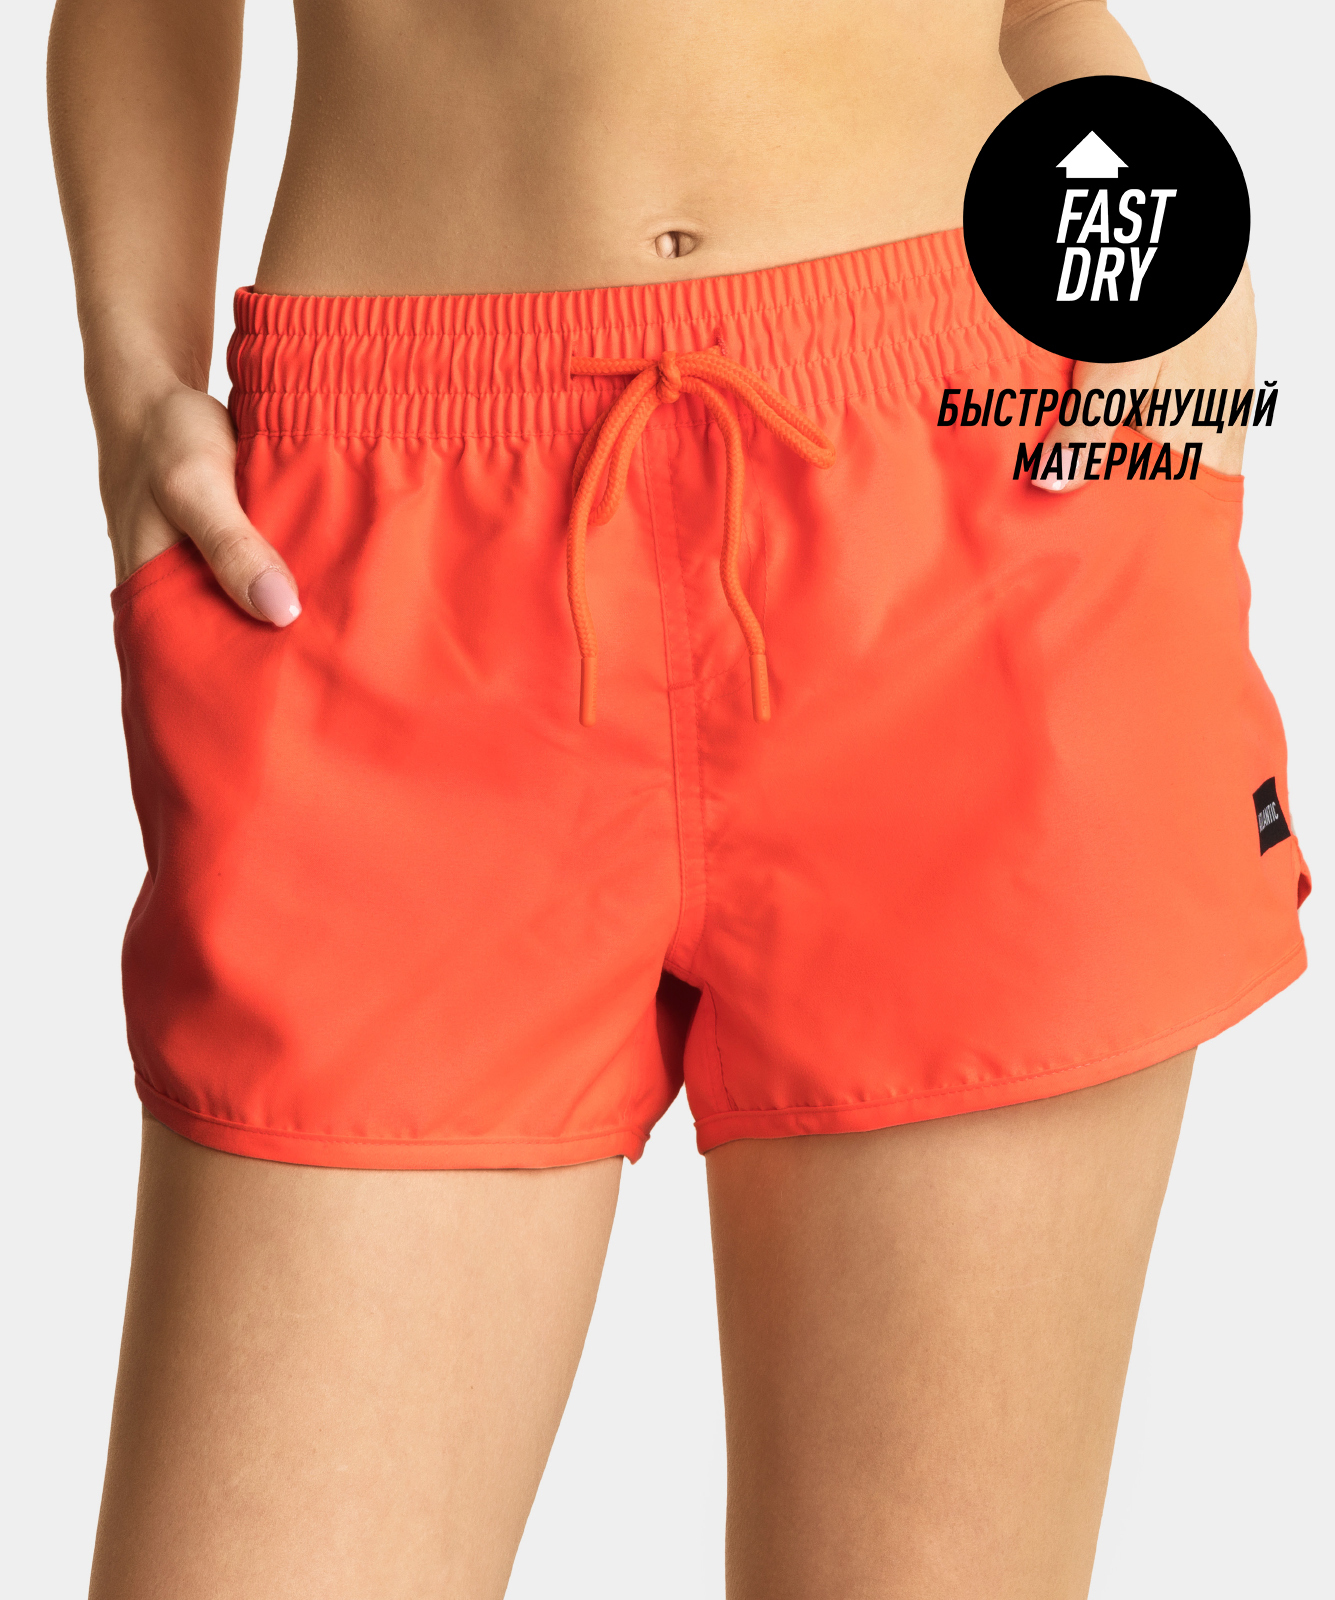 Пляжные шорты женские Atlantic, 1 шт. в уп., полиэстер, оранжевые, KSS-001